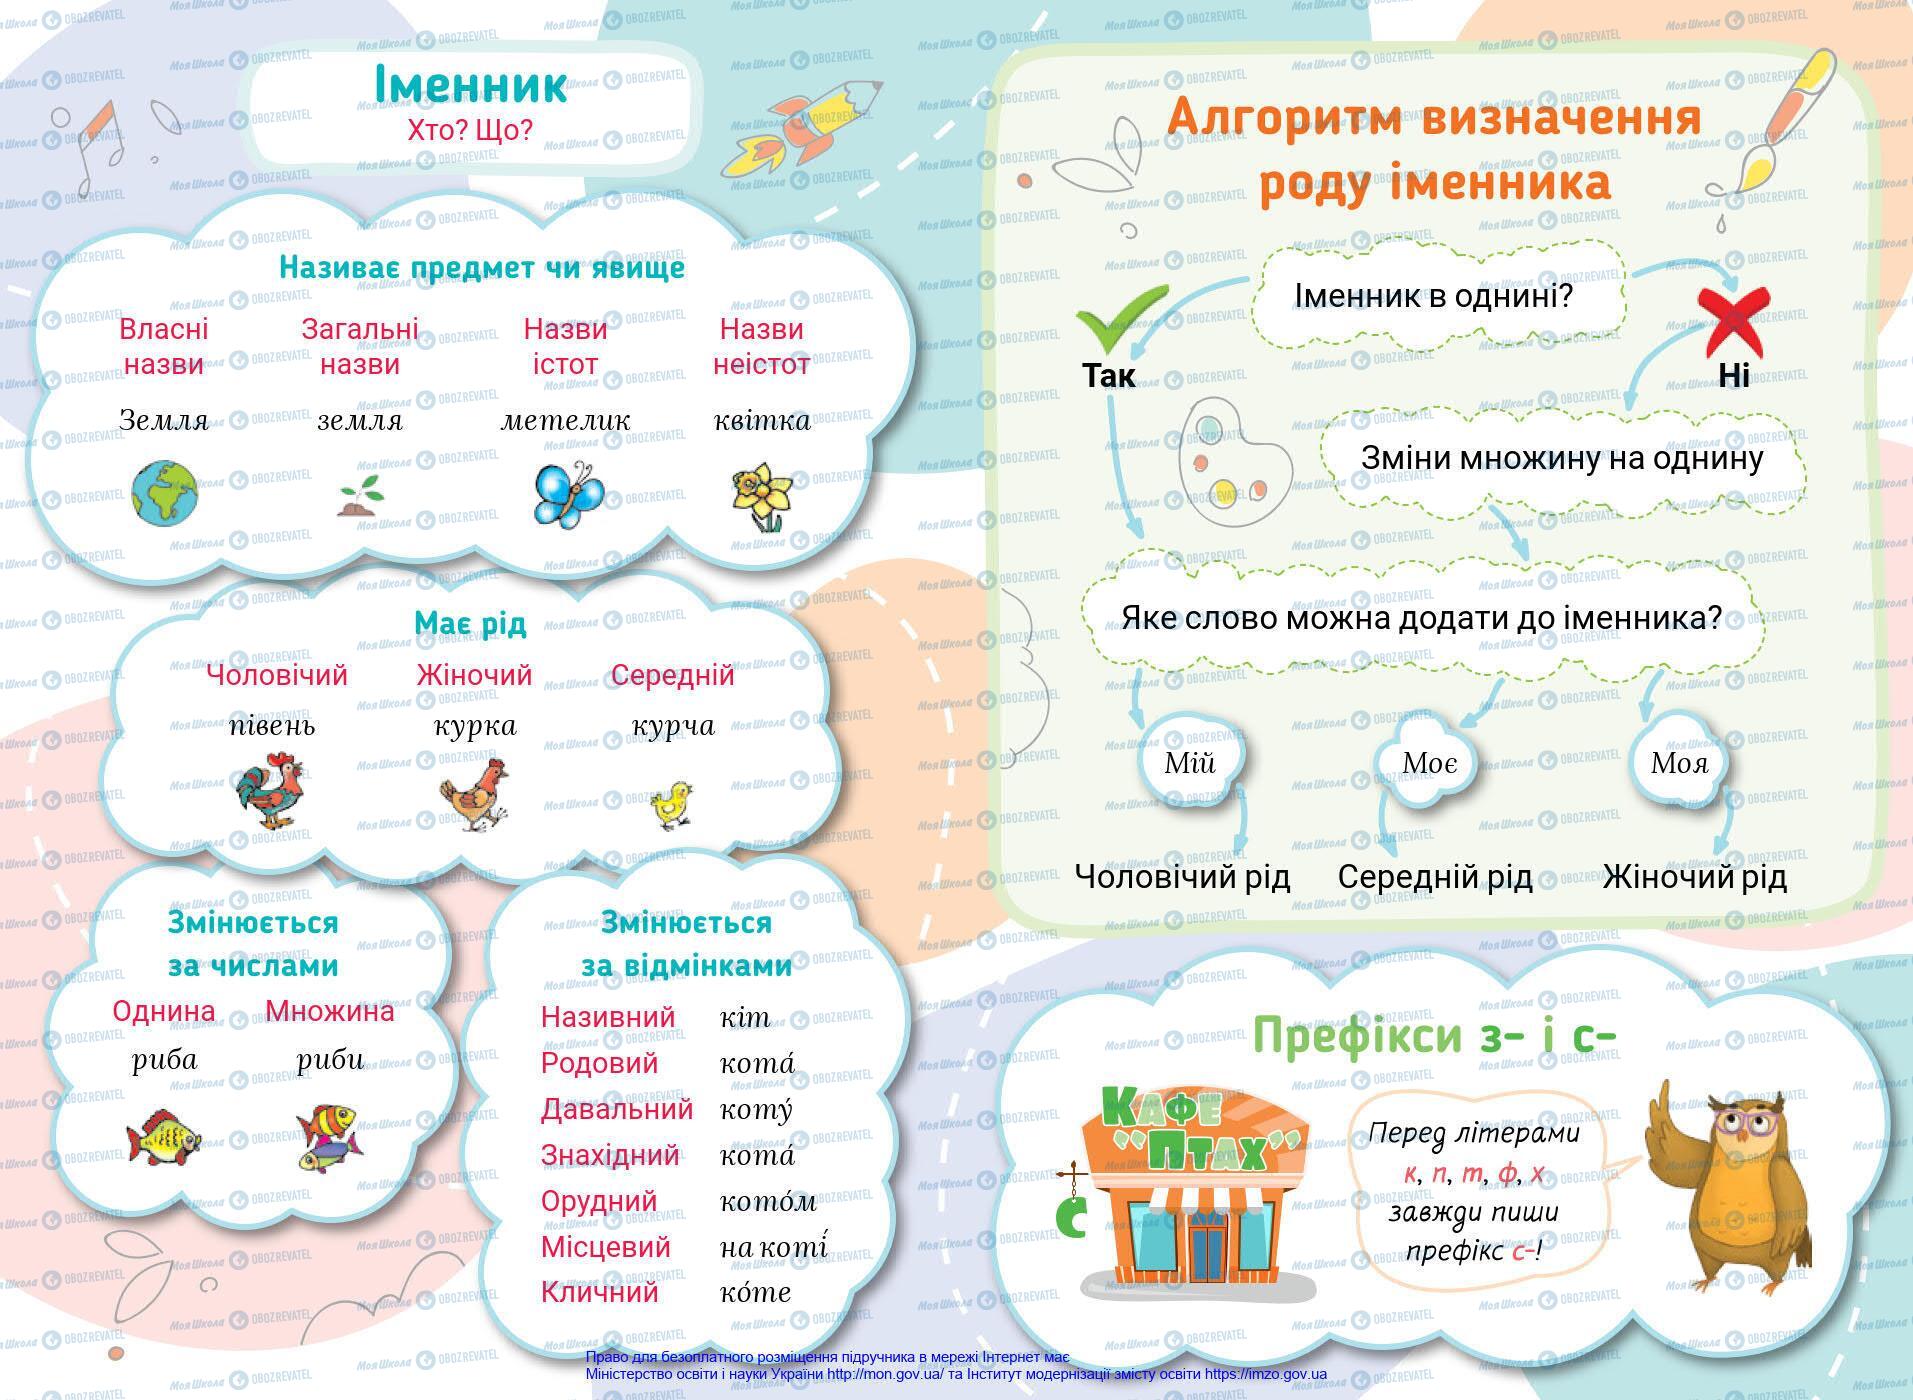 Підручники Українська мова 4 клас сторінка 144-145